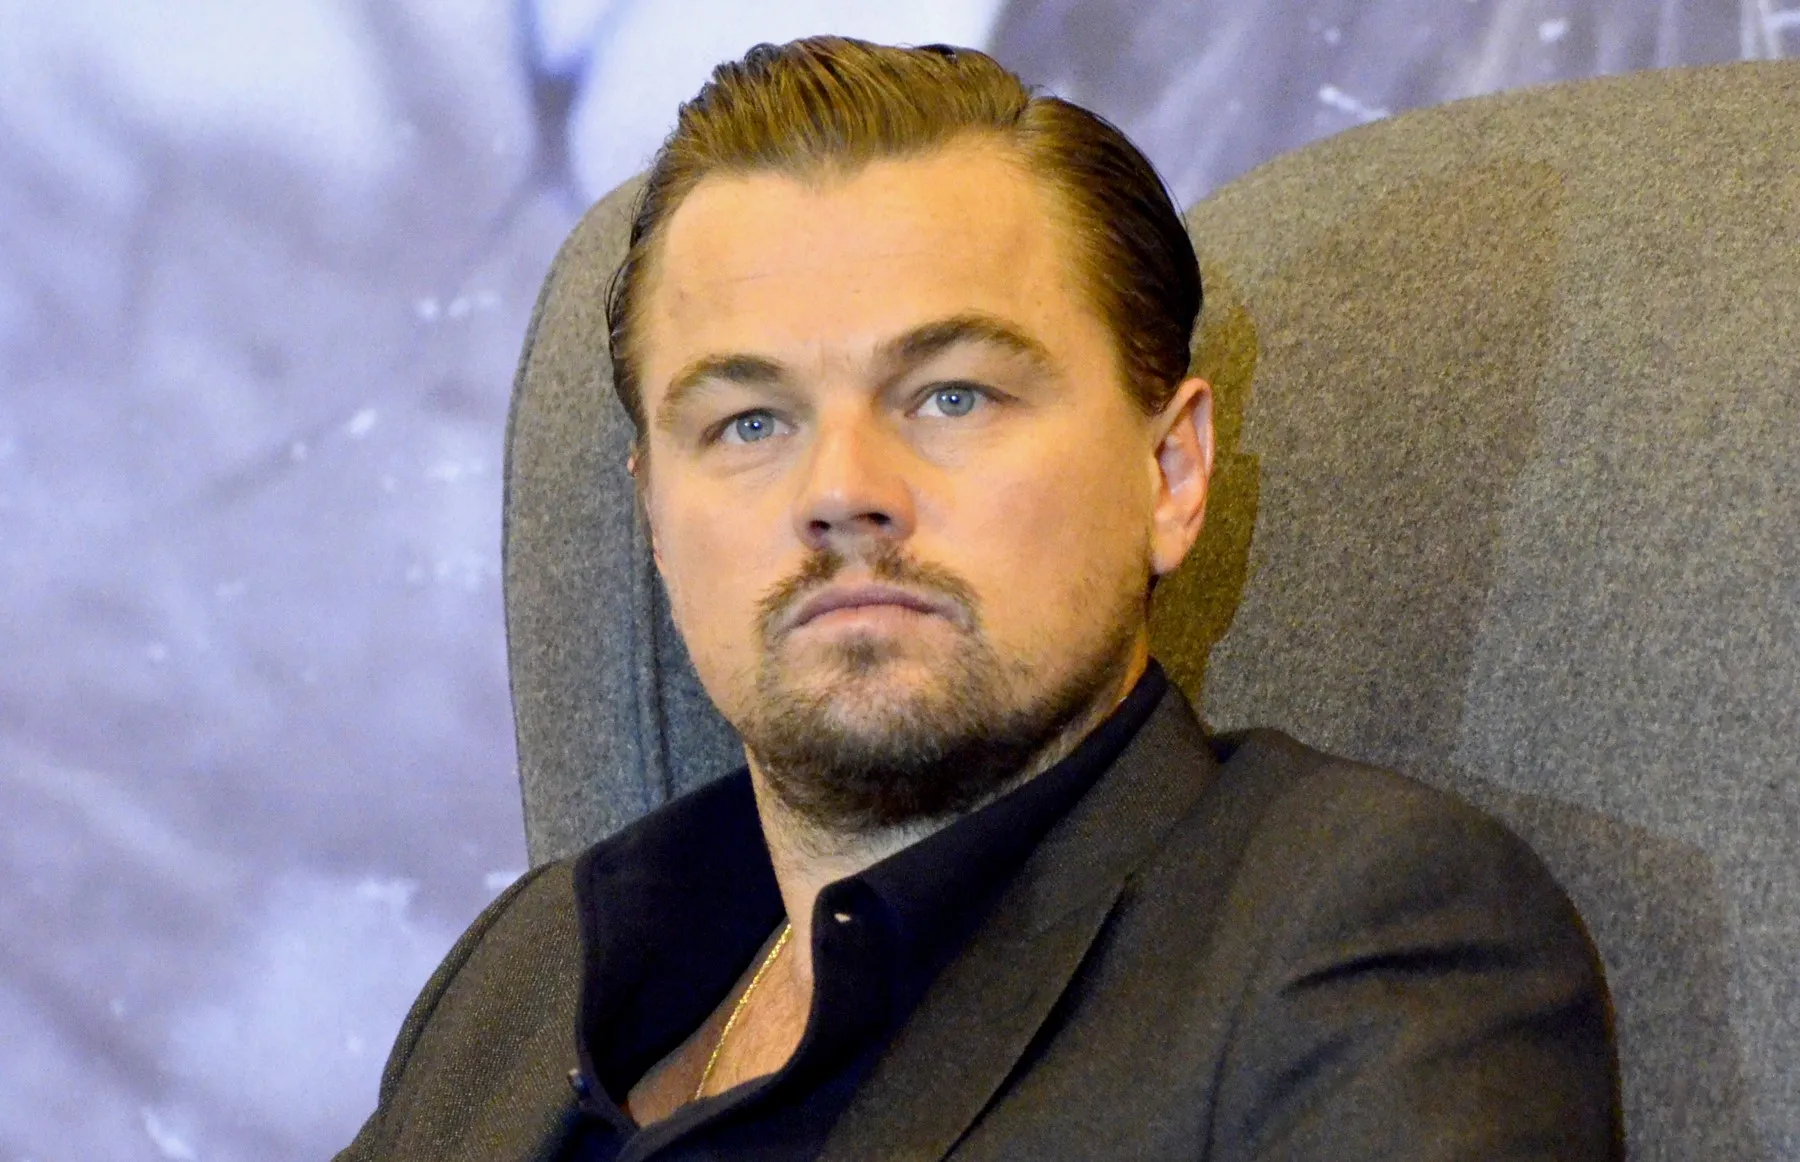 DiCaprio recibe críticas por romance con modelo de 19 años